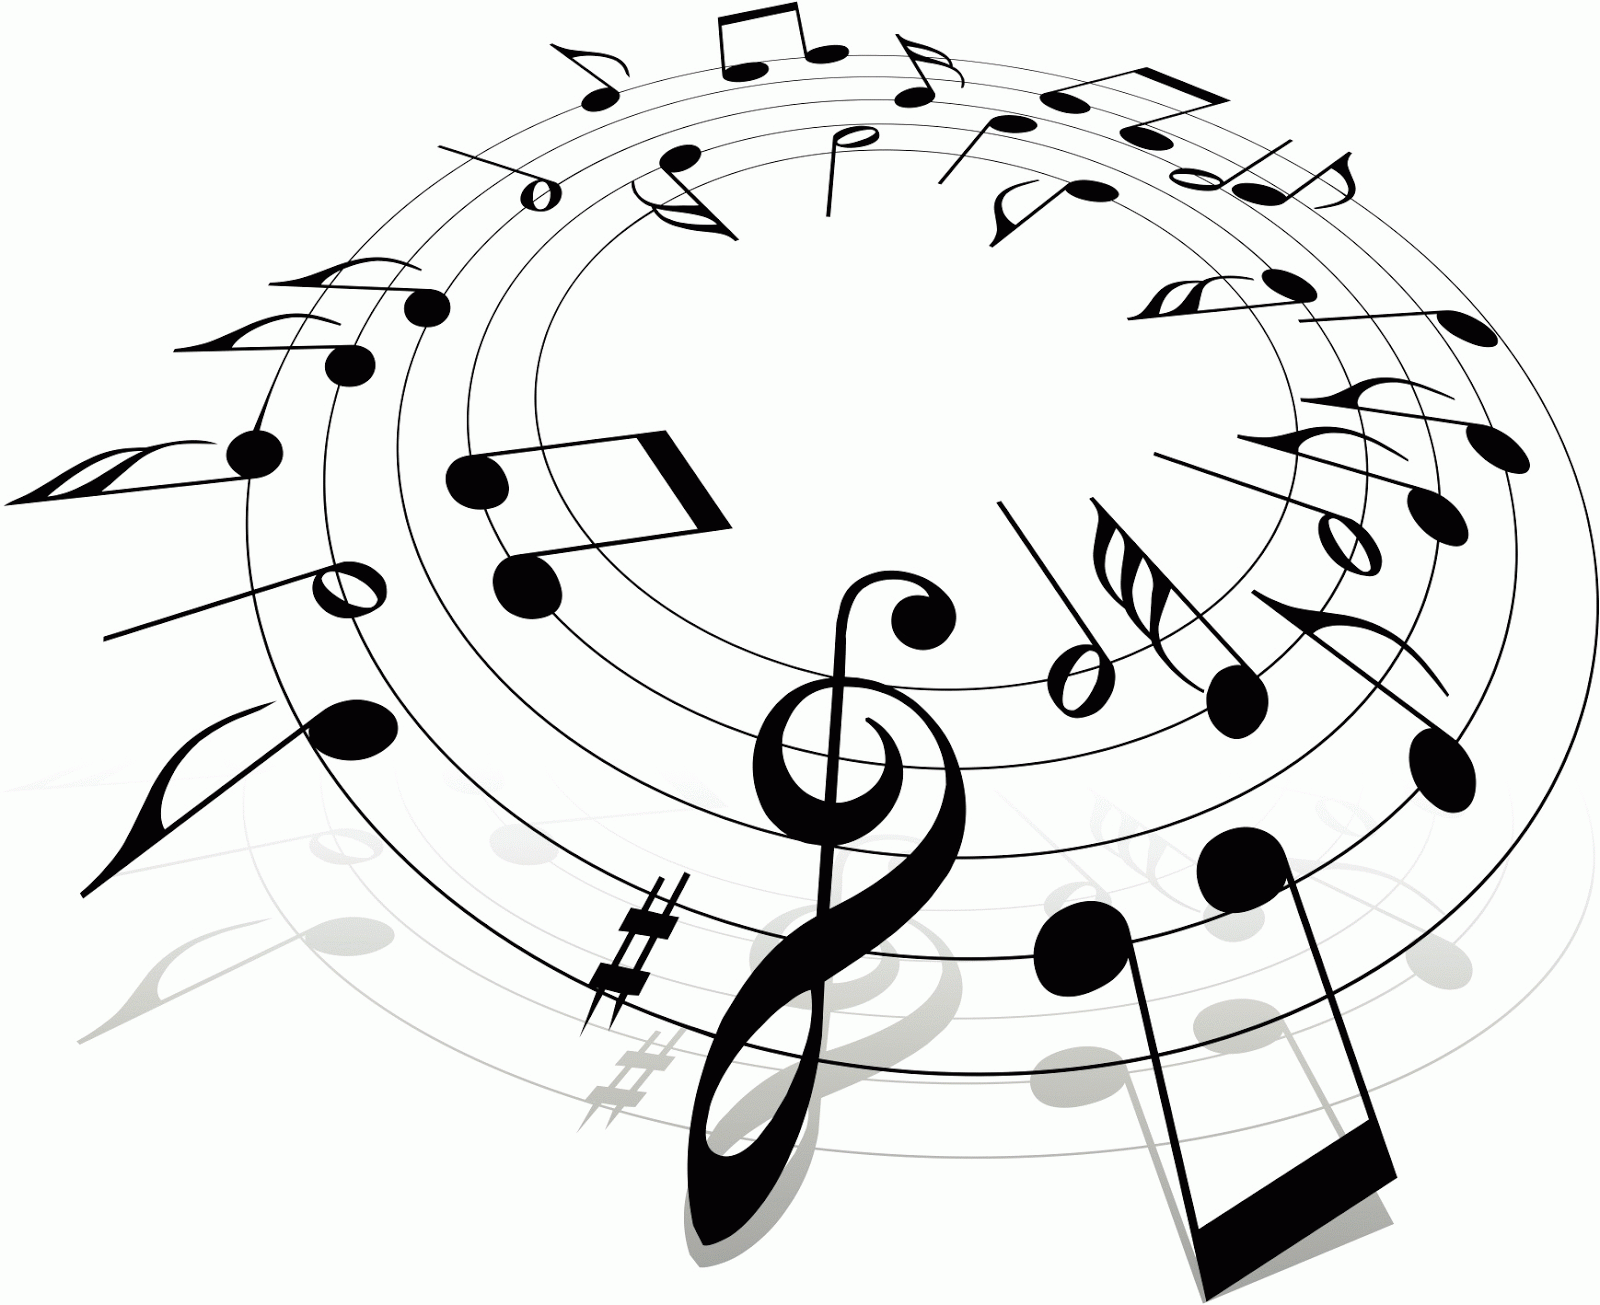 composicion circular con notas musicales imagenes en blanco y negro